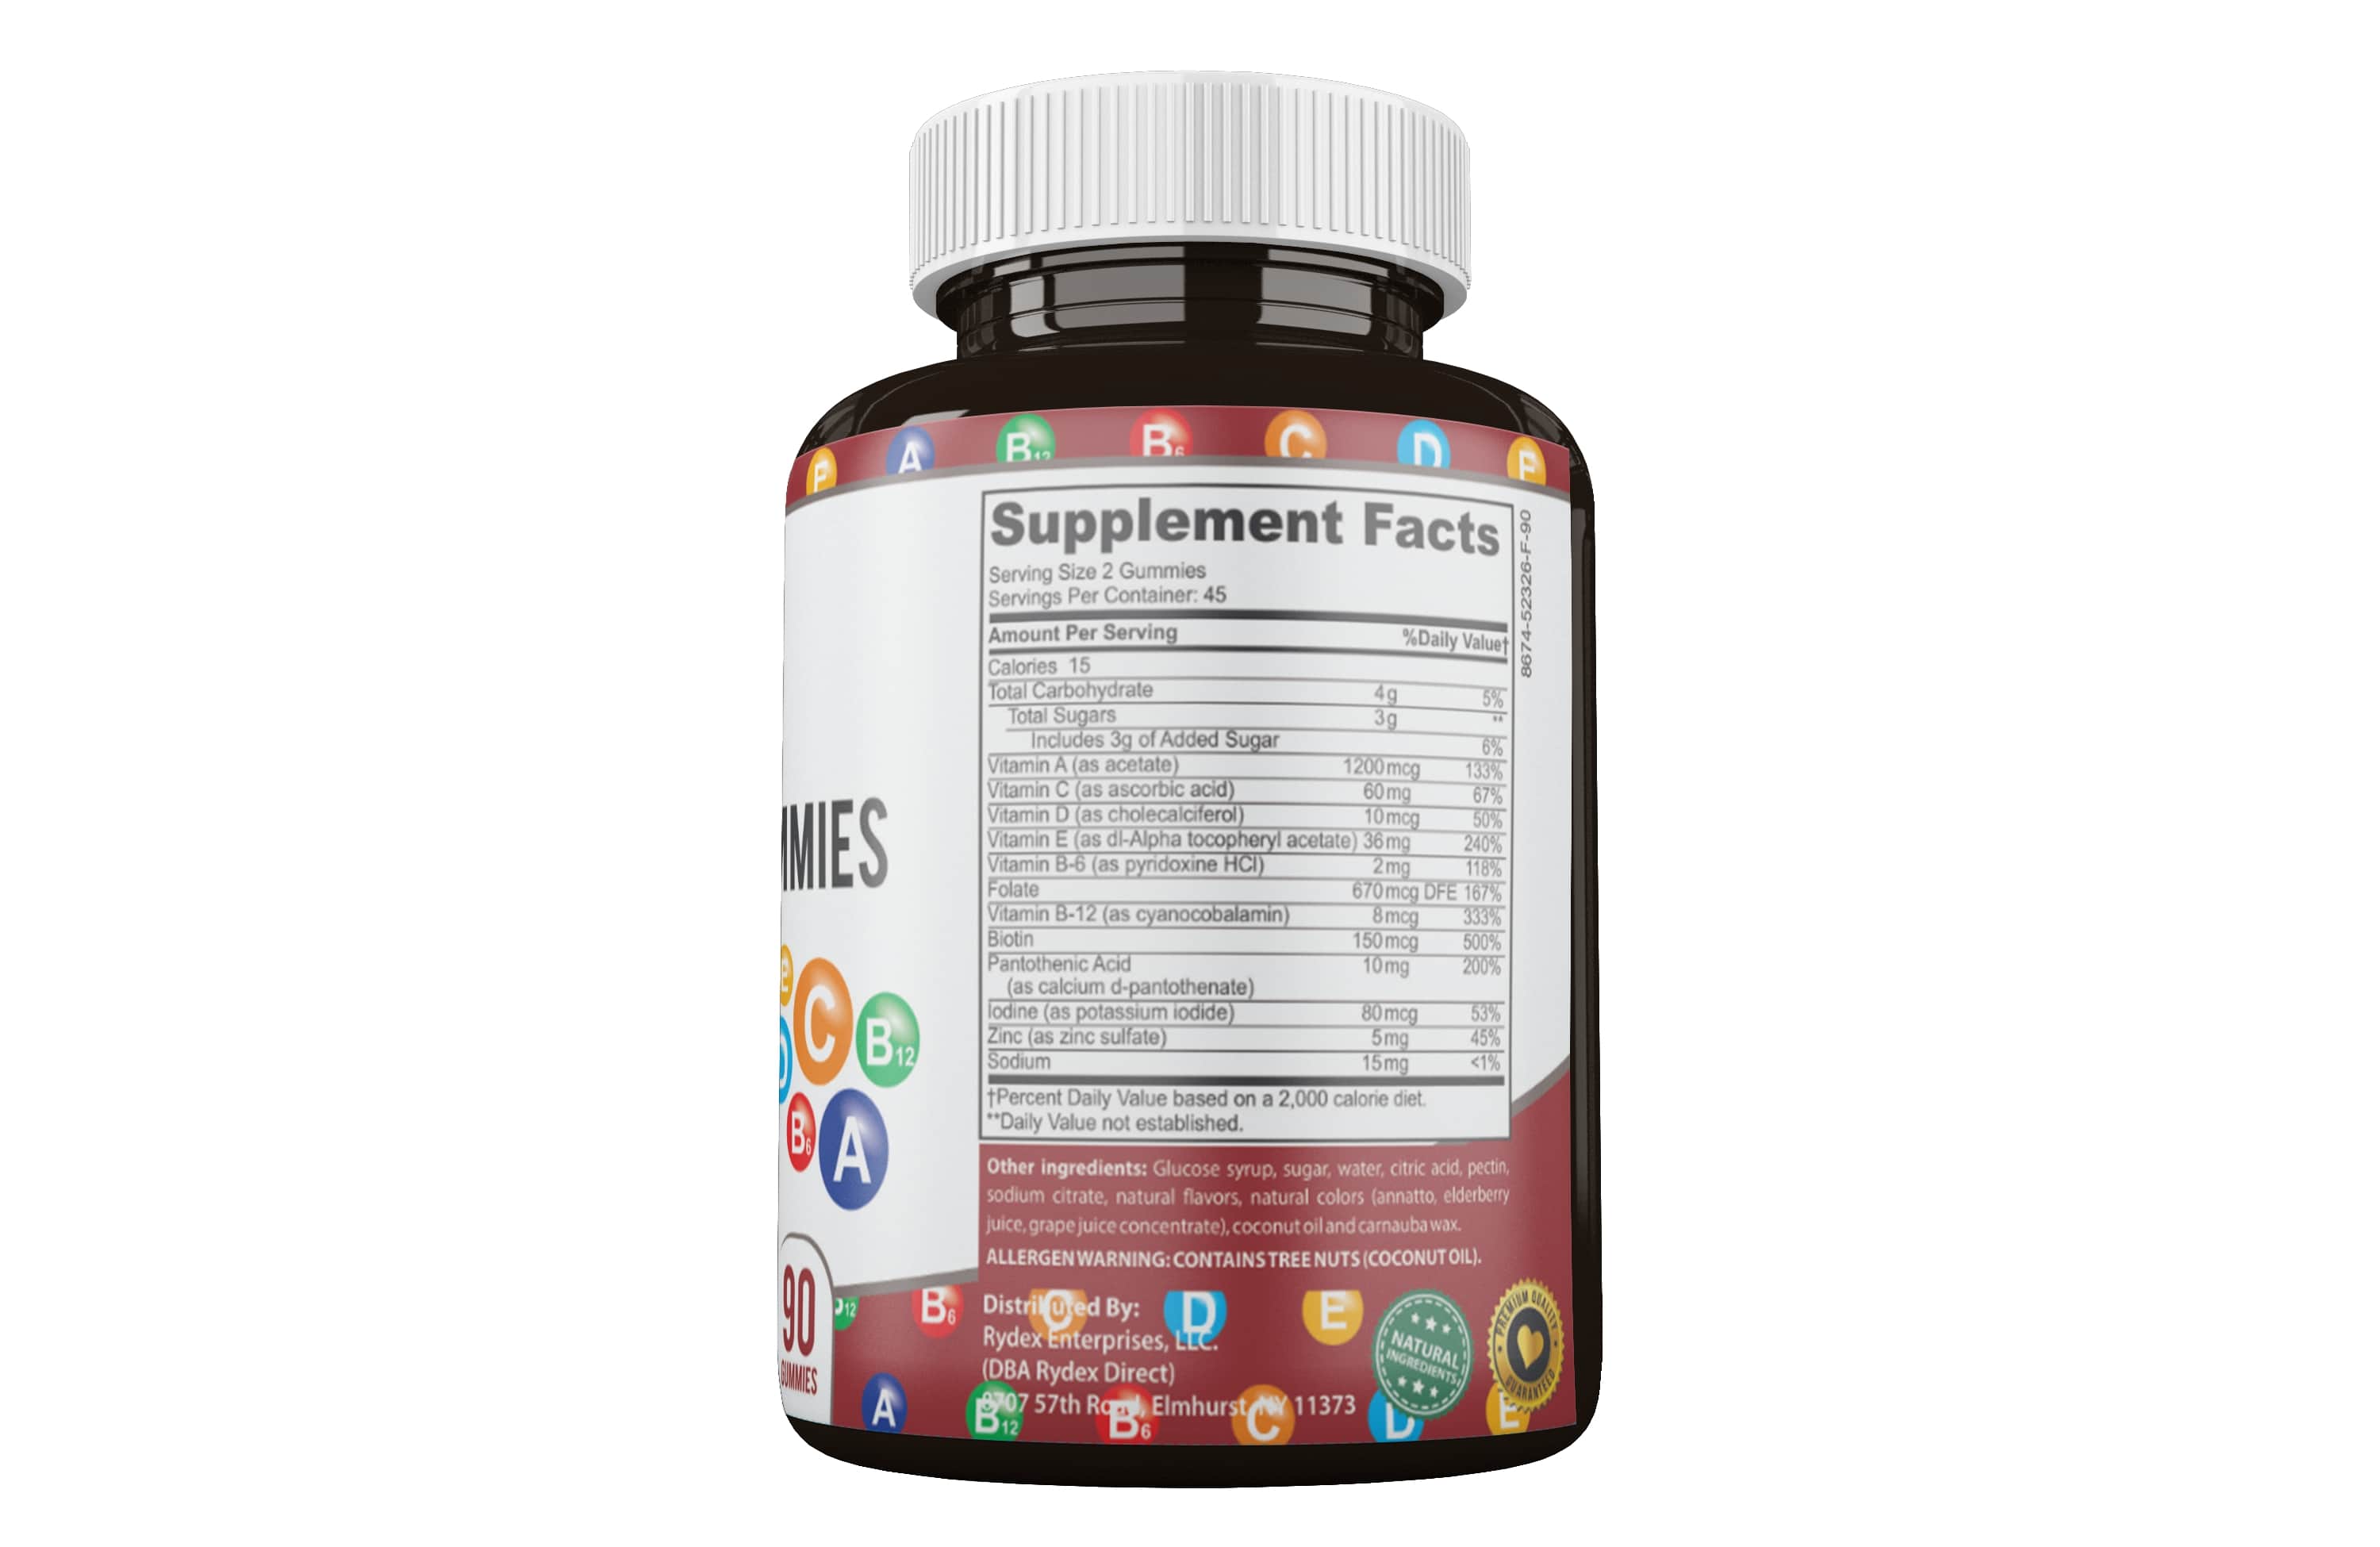 QAG01 - Adult Multi-Vitamin Gummies